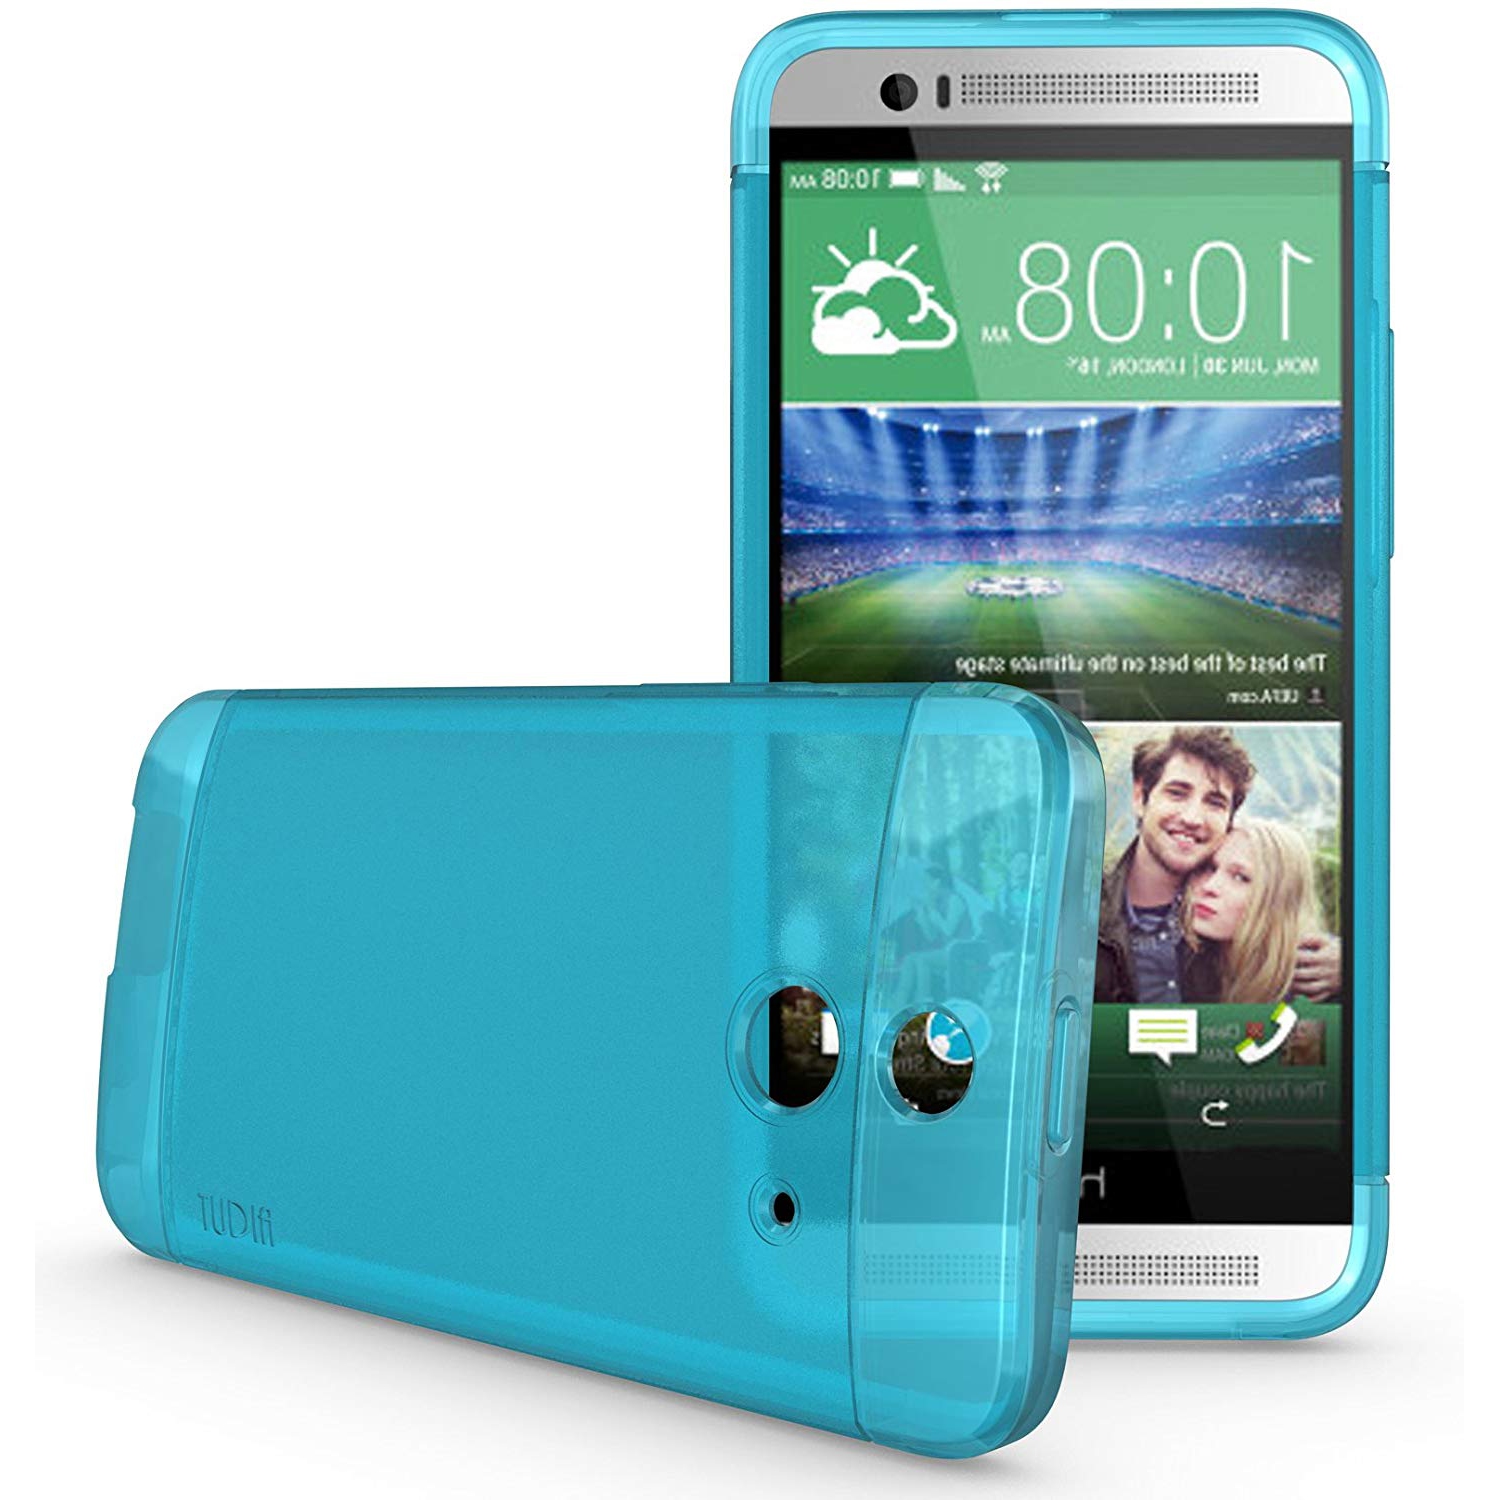 TUDIA Ultra Slim flexi skin [LITE] TPU Bumper Protective Case for HTC One (E8) (Teal)